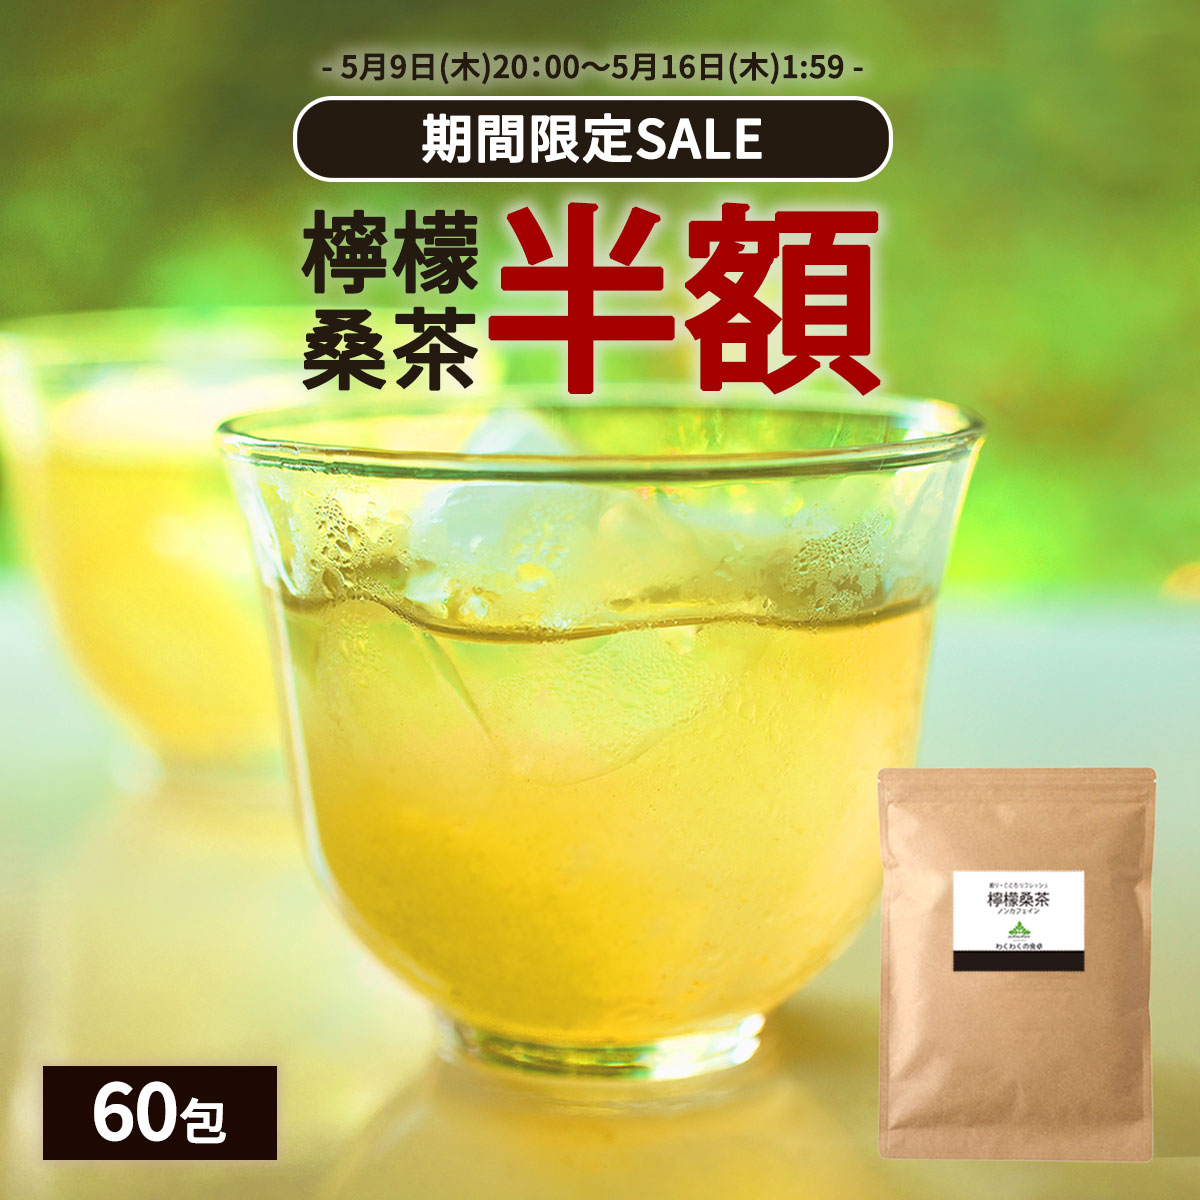 【期間限定半額SALE】( 檸檬 桑茶 60